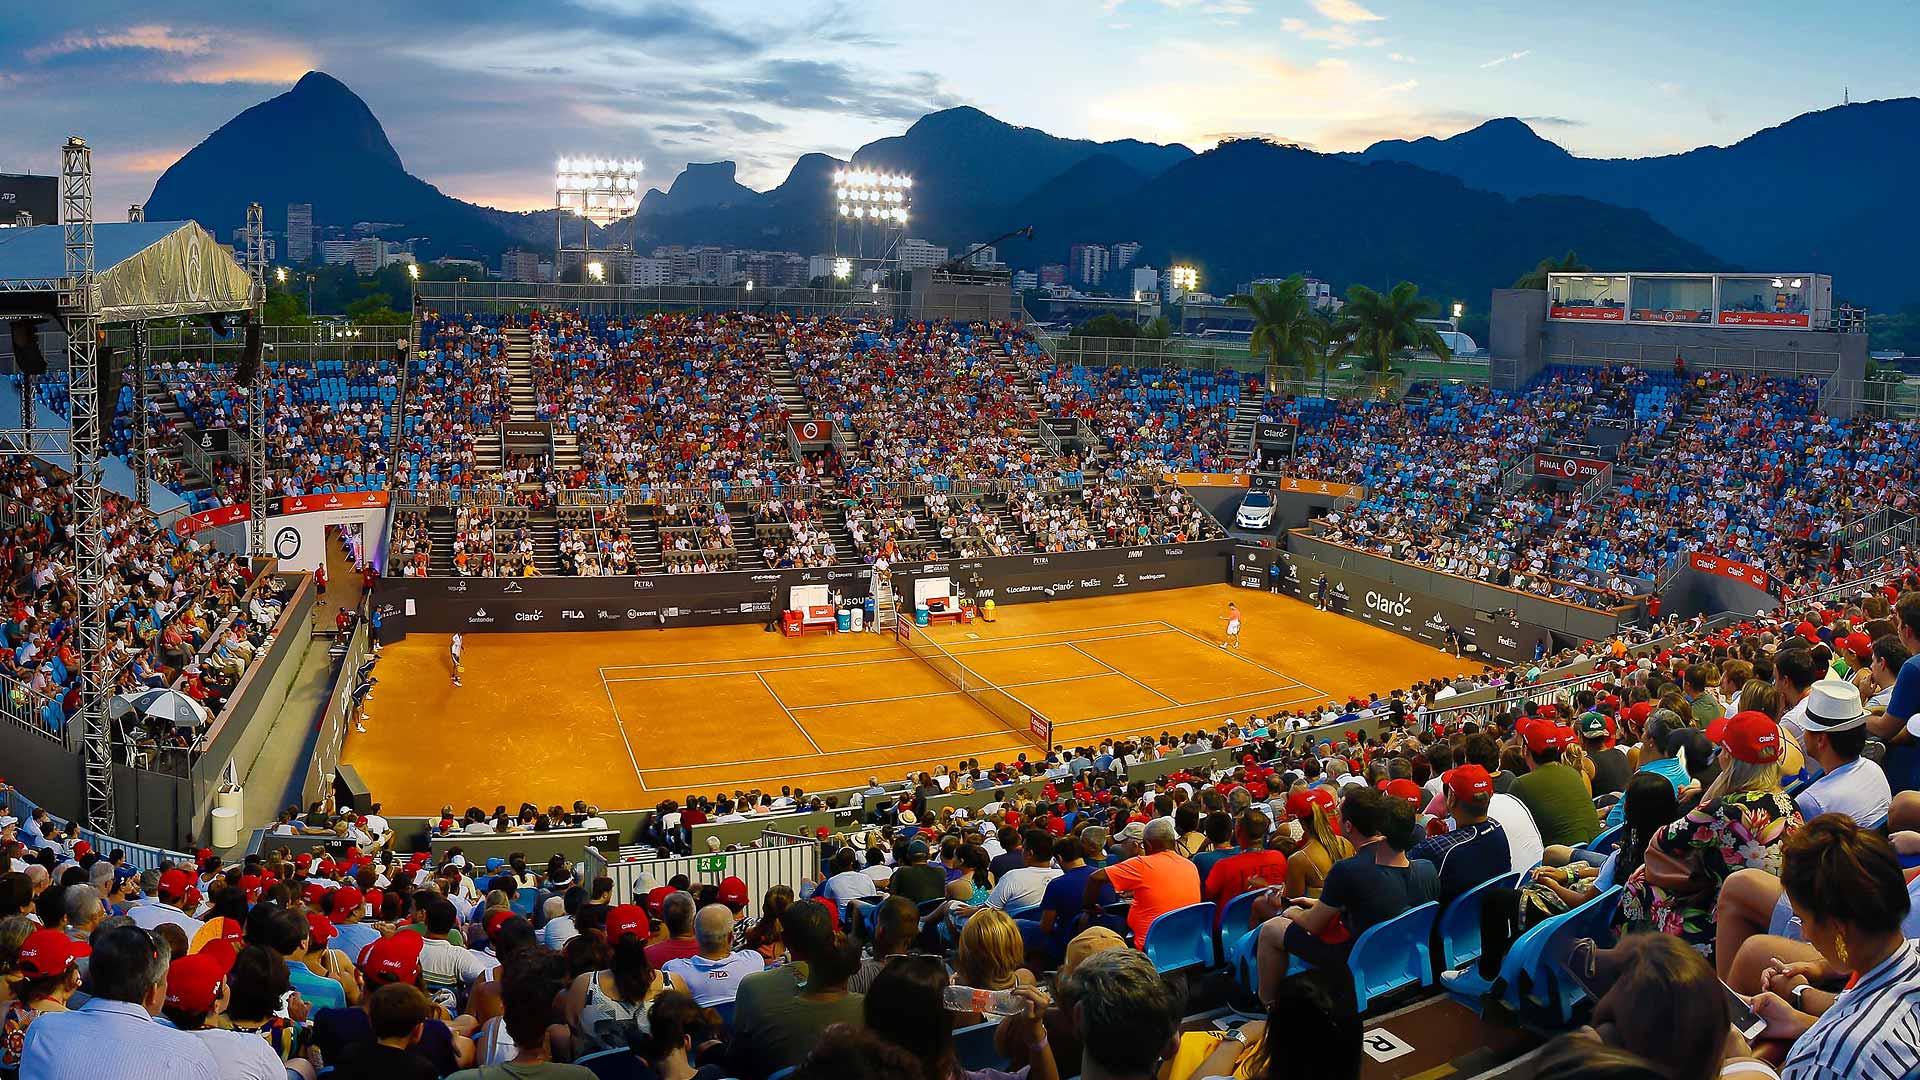 Rio Open: 4 motivos para acompanhar o torneio de tênis que começa hoje